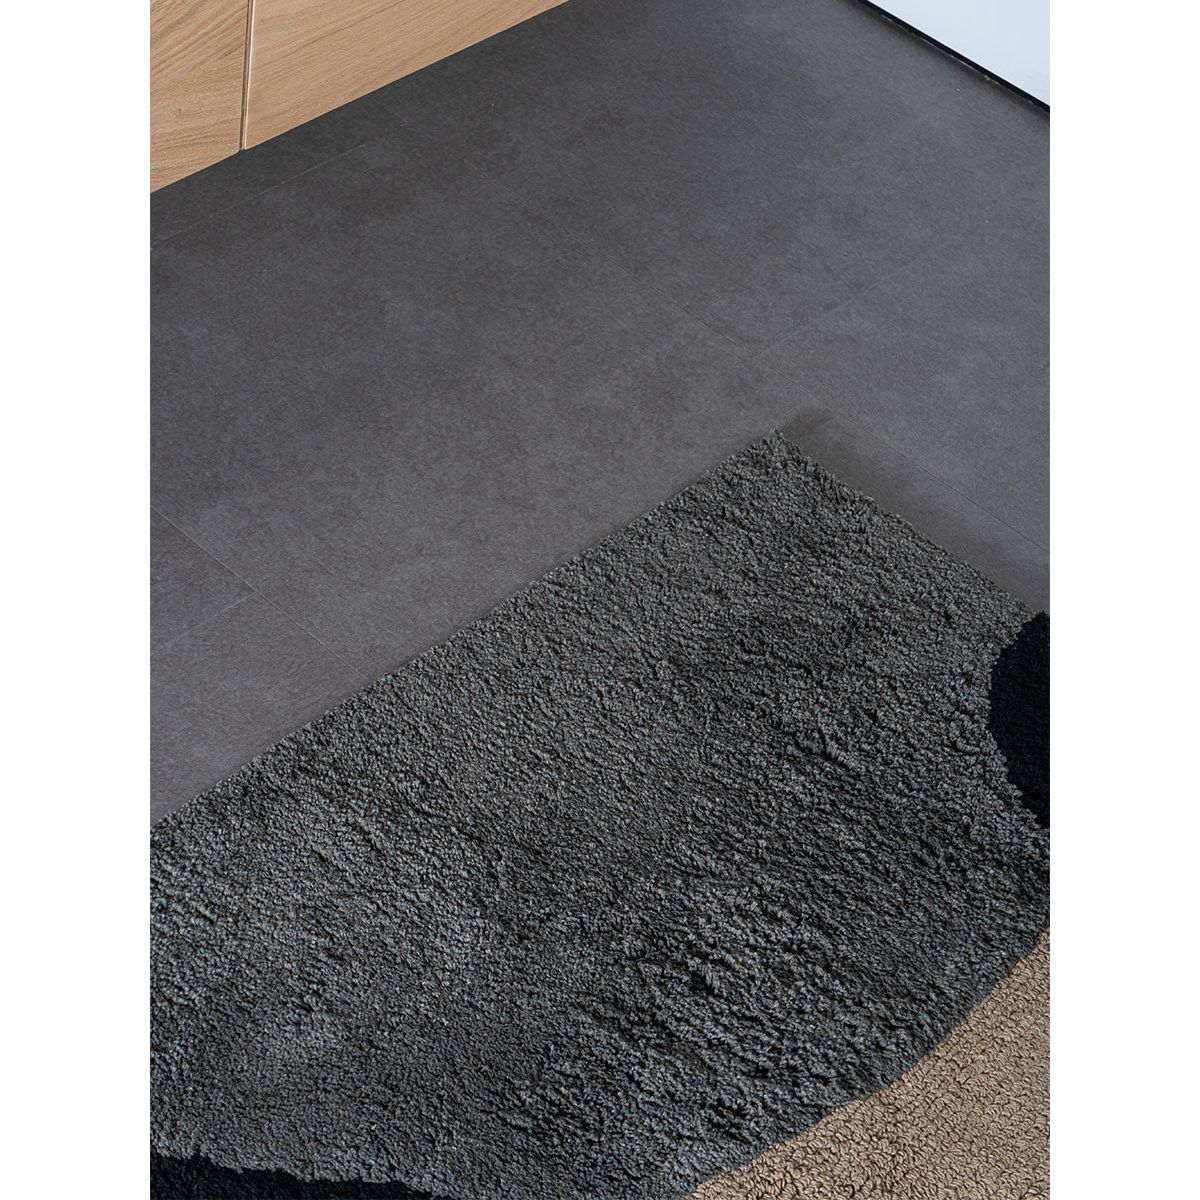 Badmat Bink - Grey 50 x 80 cm